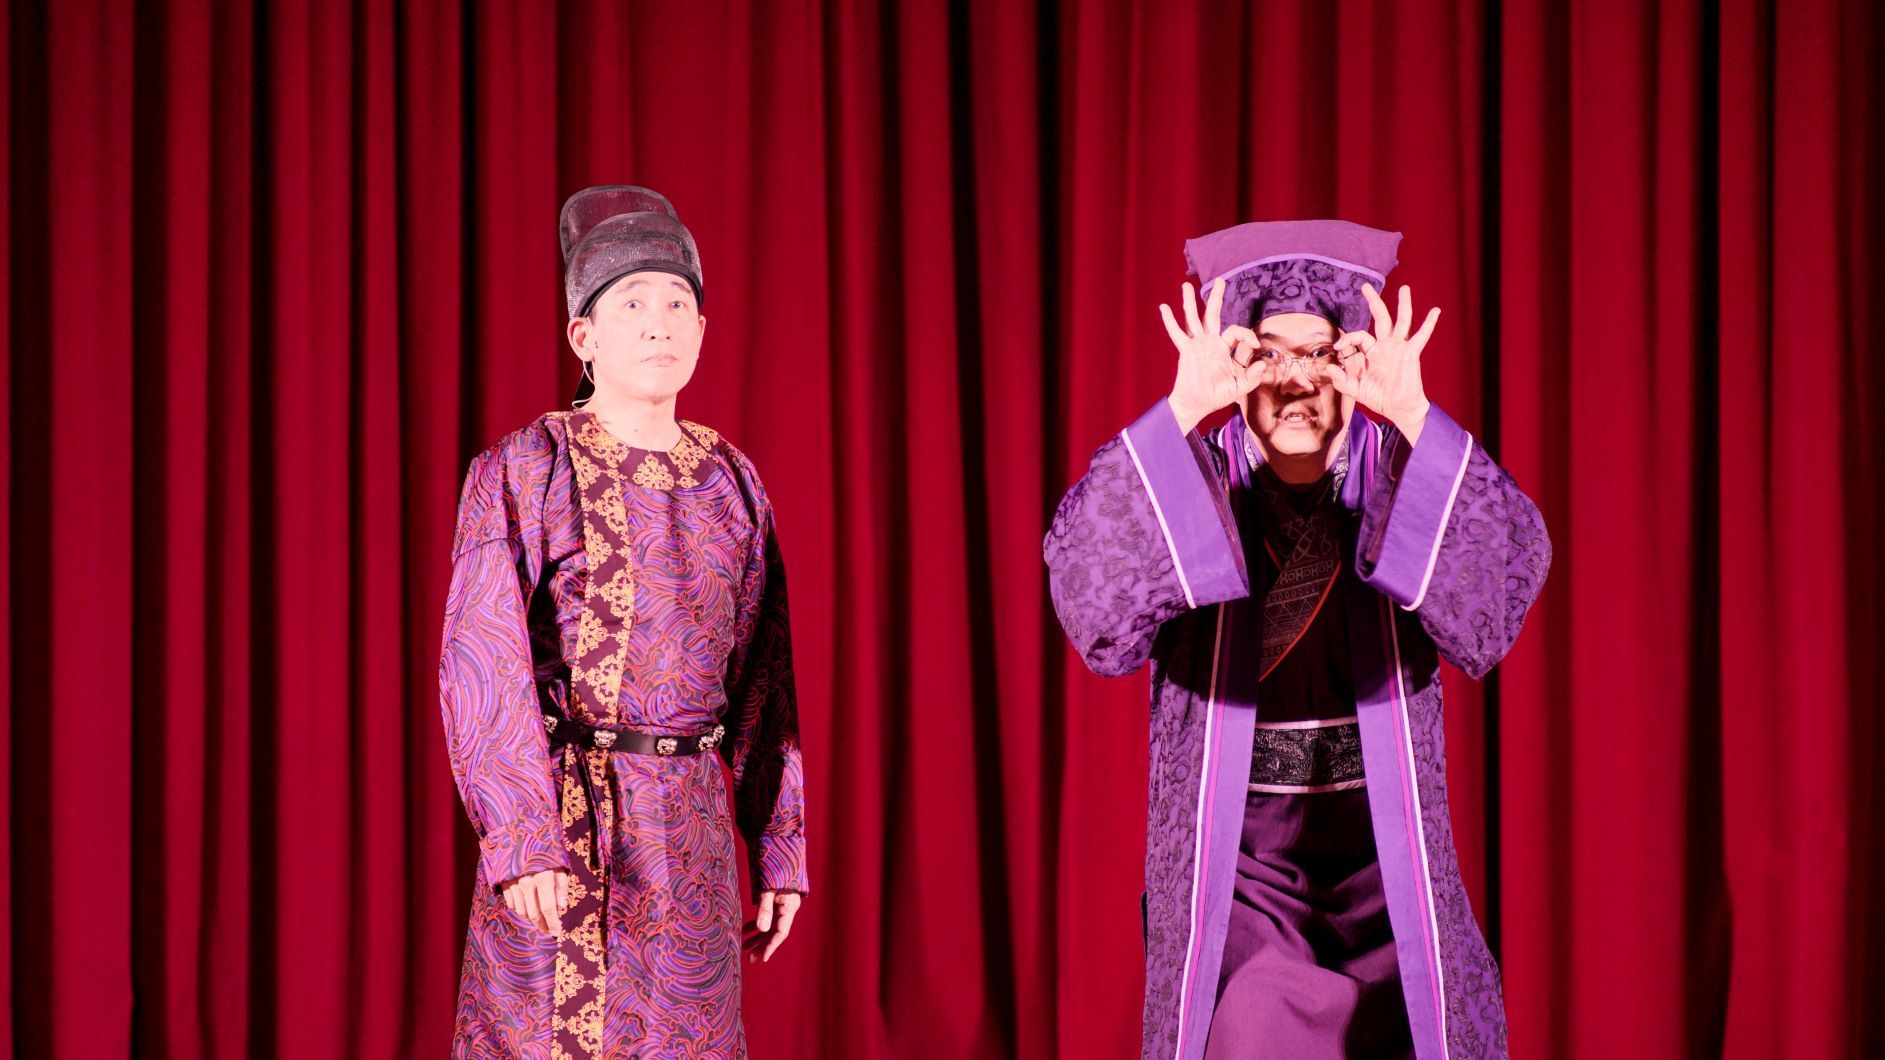 亚大艺文季邀请知名相声剧团「相声瓦舍」演出，由知名相声演员宋少卿(左)、冯翊纲带来年度新作《三十三》。